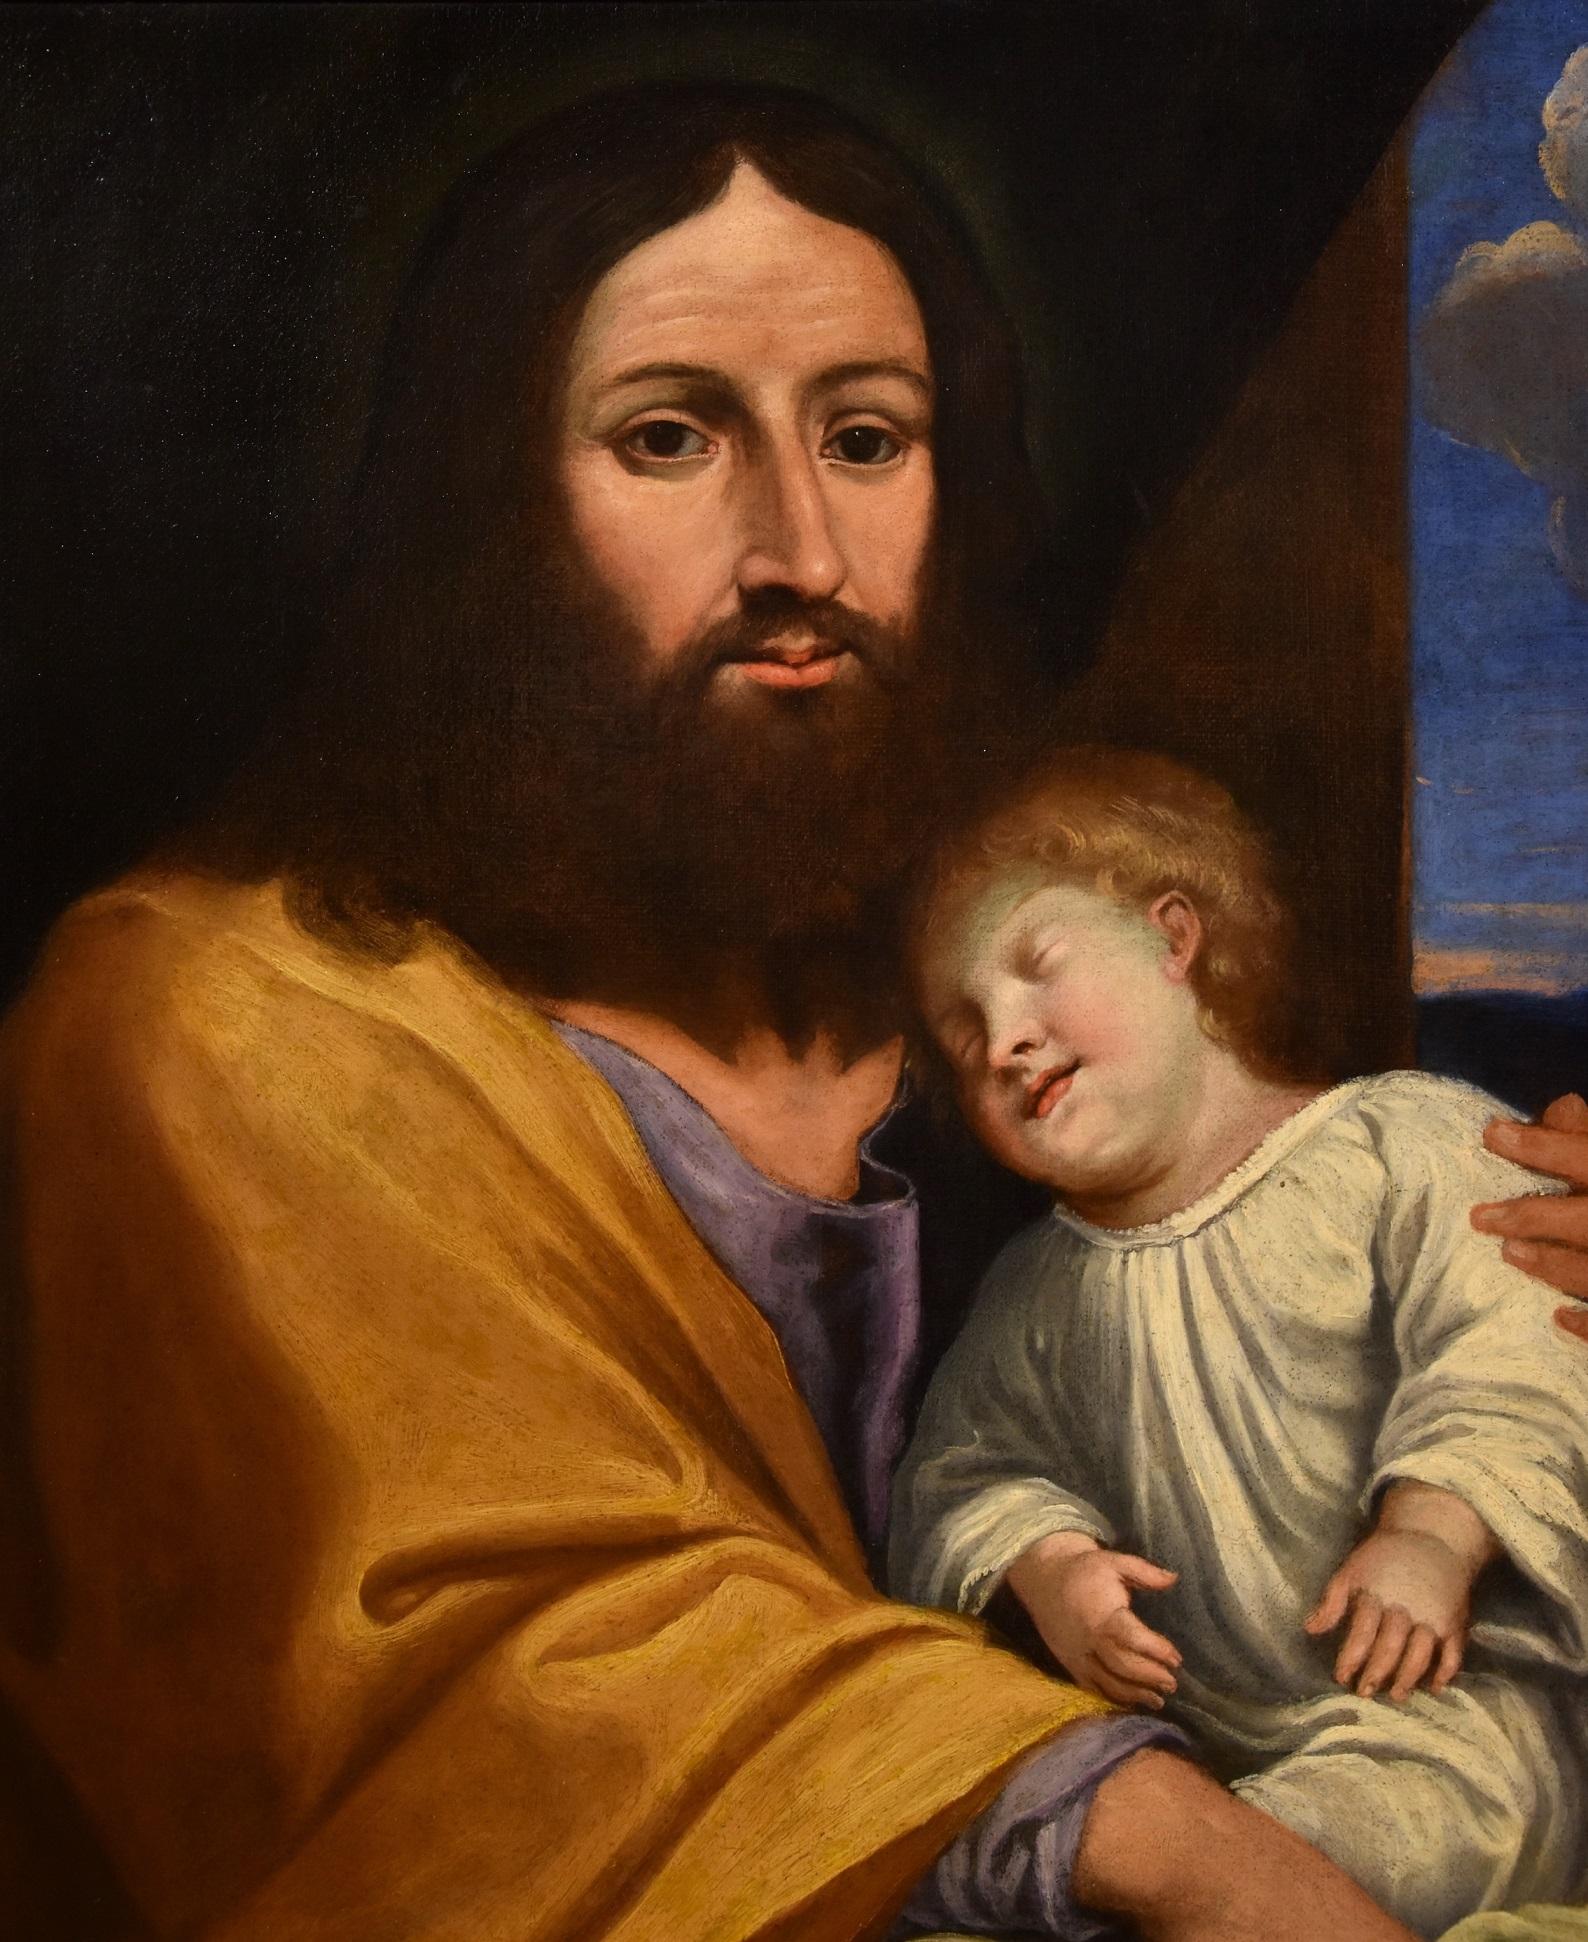 Antikes Gemälde, das Jesus mit dem Sohn des Kommissars darstellt
(Alternative Lesart: Der heilige Josef mit dem Kind oder die 